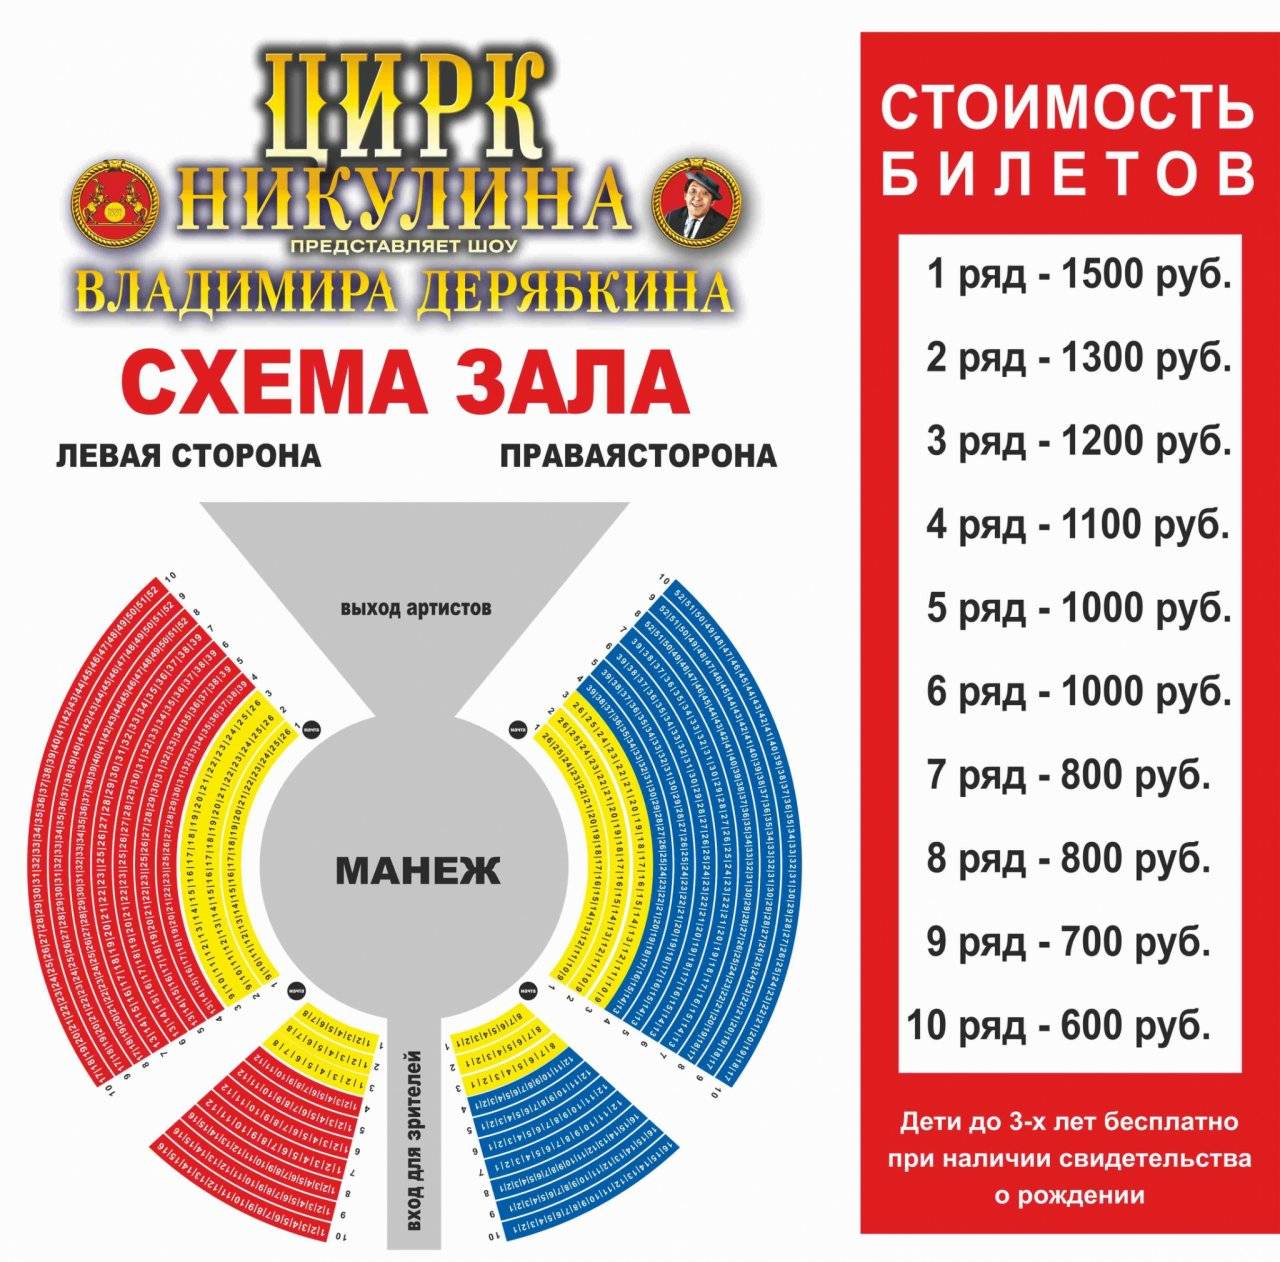 Билеты в московский цирк никулина на цветном бульваре